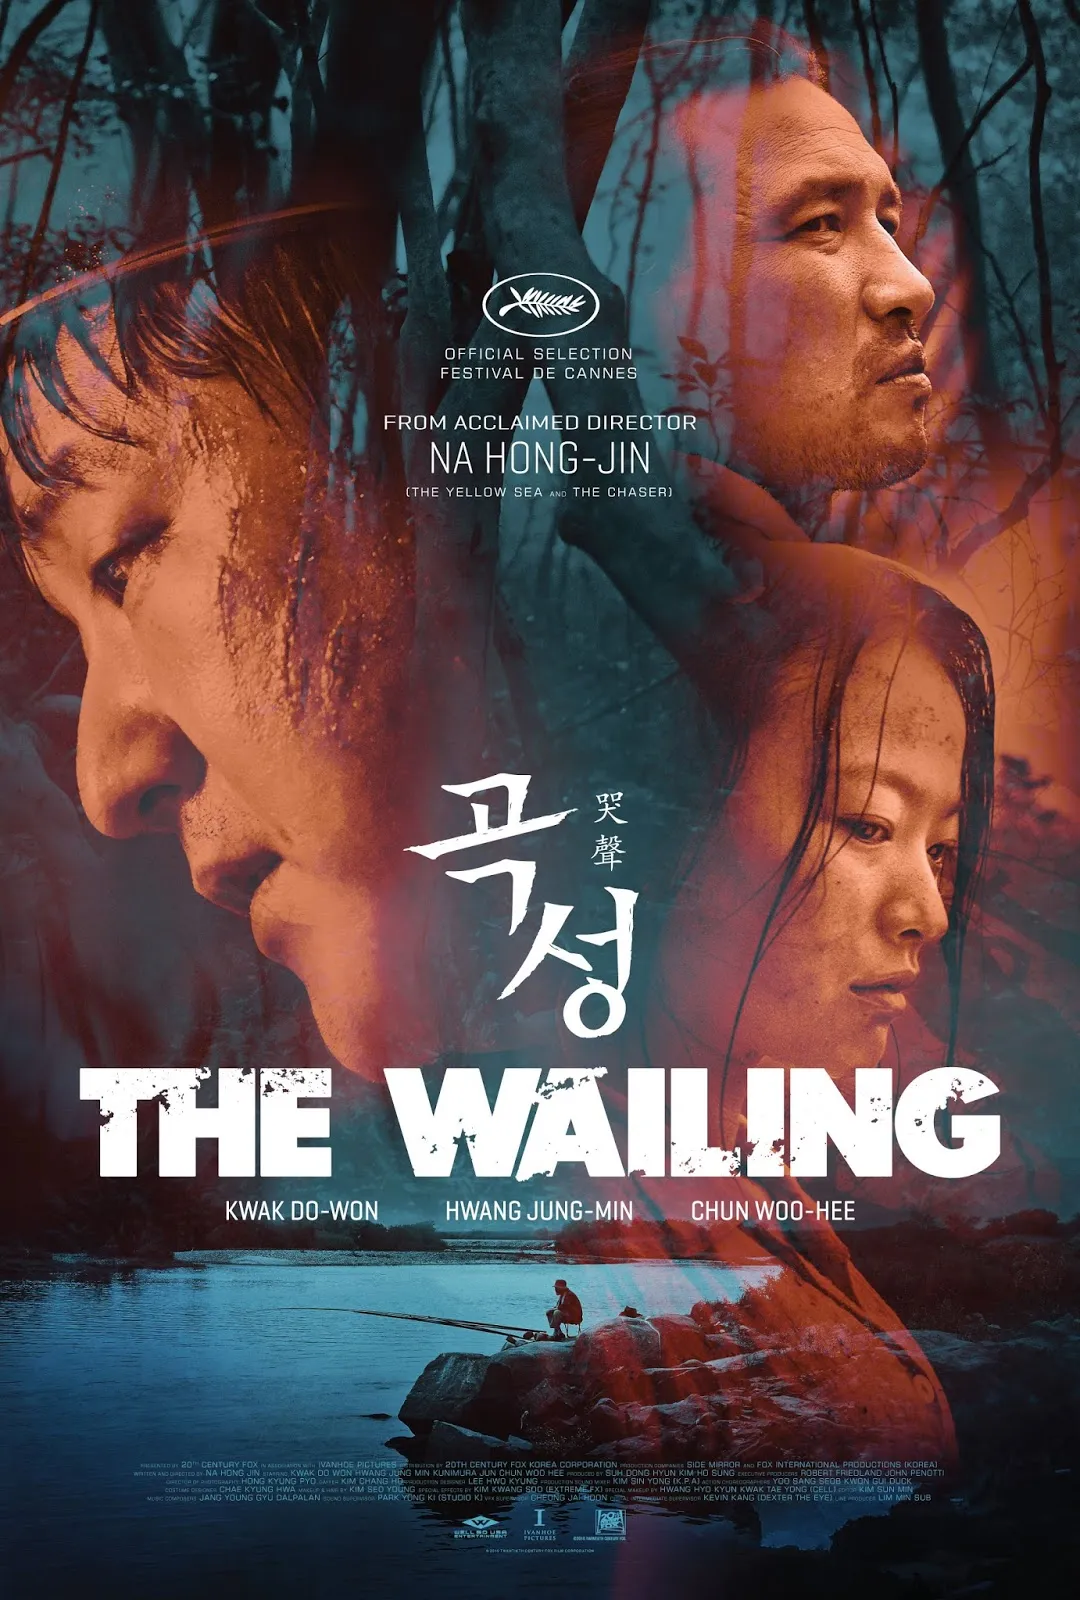 The wailing ( 2019 ) bộ phim nổi tiếng của Hàn Quốc về thể loại kinh dị, tâm lý